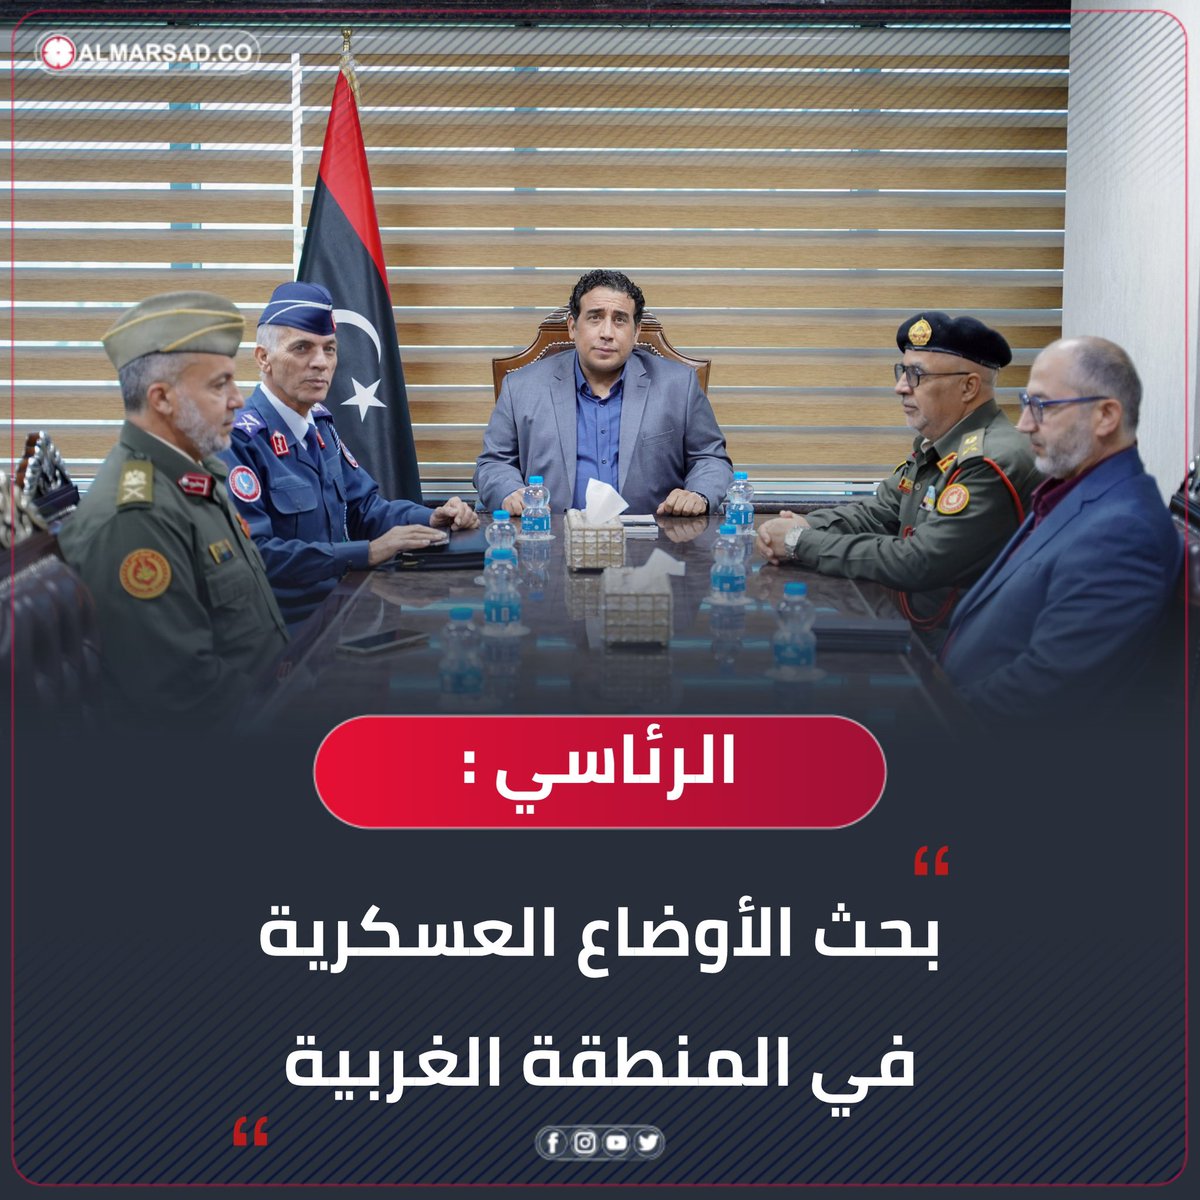 خبر | المنفي يبحث مع أعضاء لجنة 5+5 عن المنطقة الغربية الأوضاع العسكرية و آخر تطورات توحيد المؤسسة العسكرية. #ليبيا #المرصد ( الرئاسي )